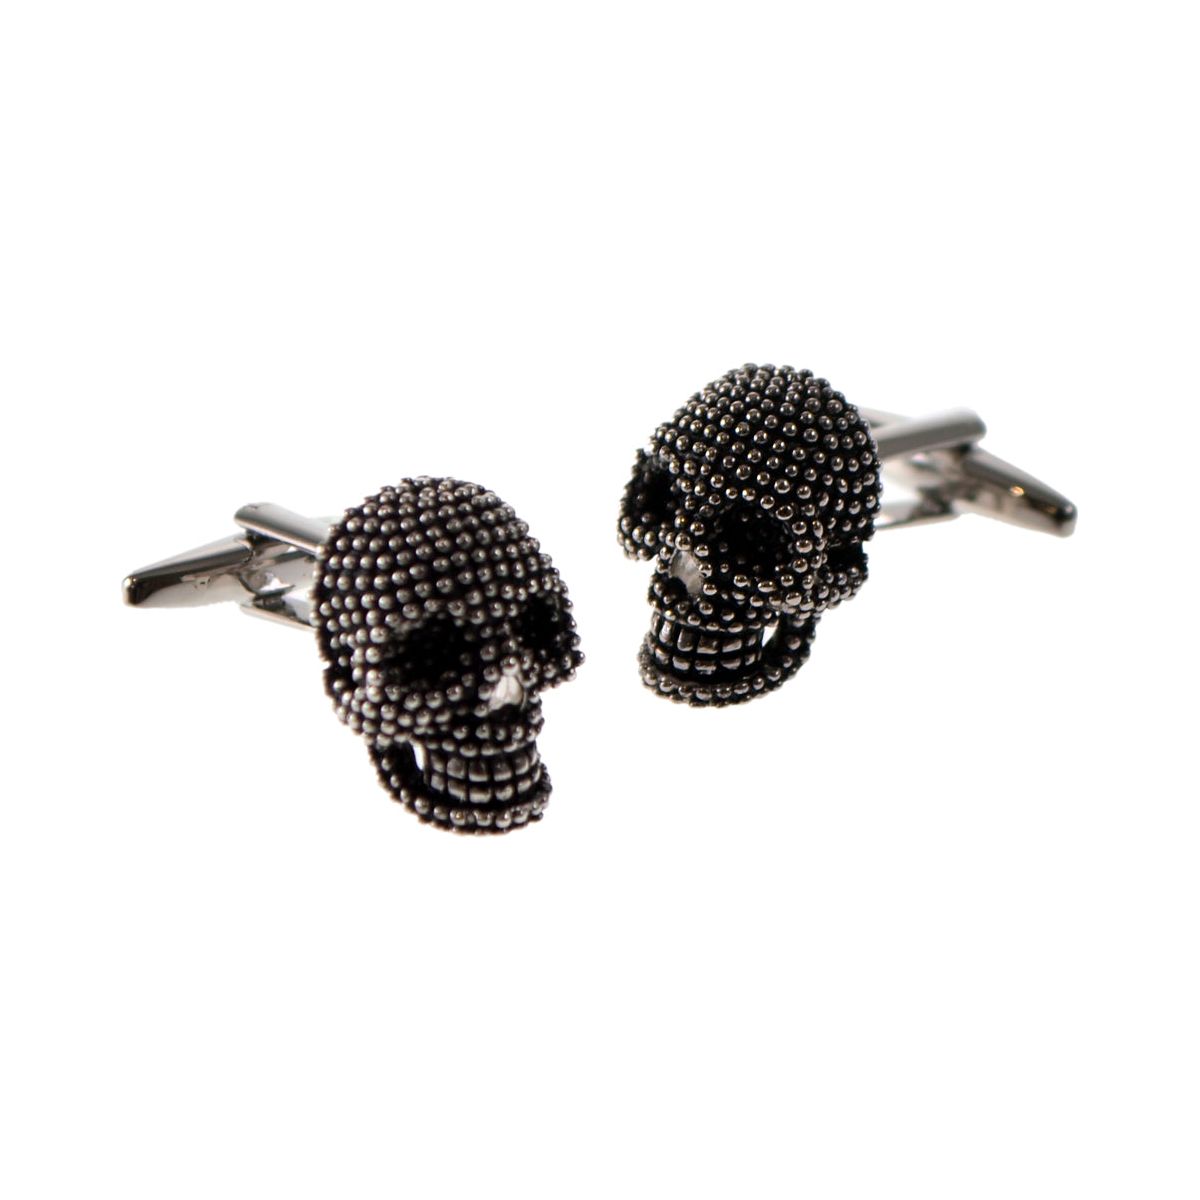 Studded Design 3D Skull Cufflinks - Ashton and Finch